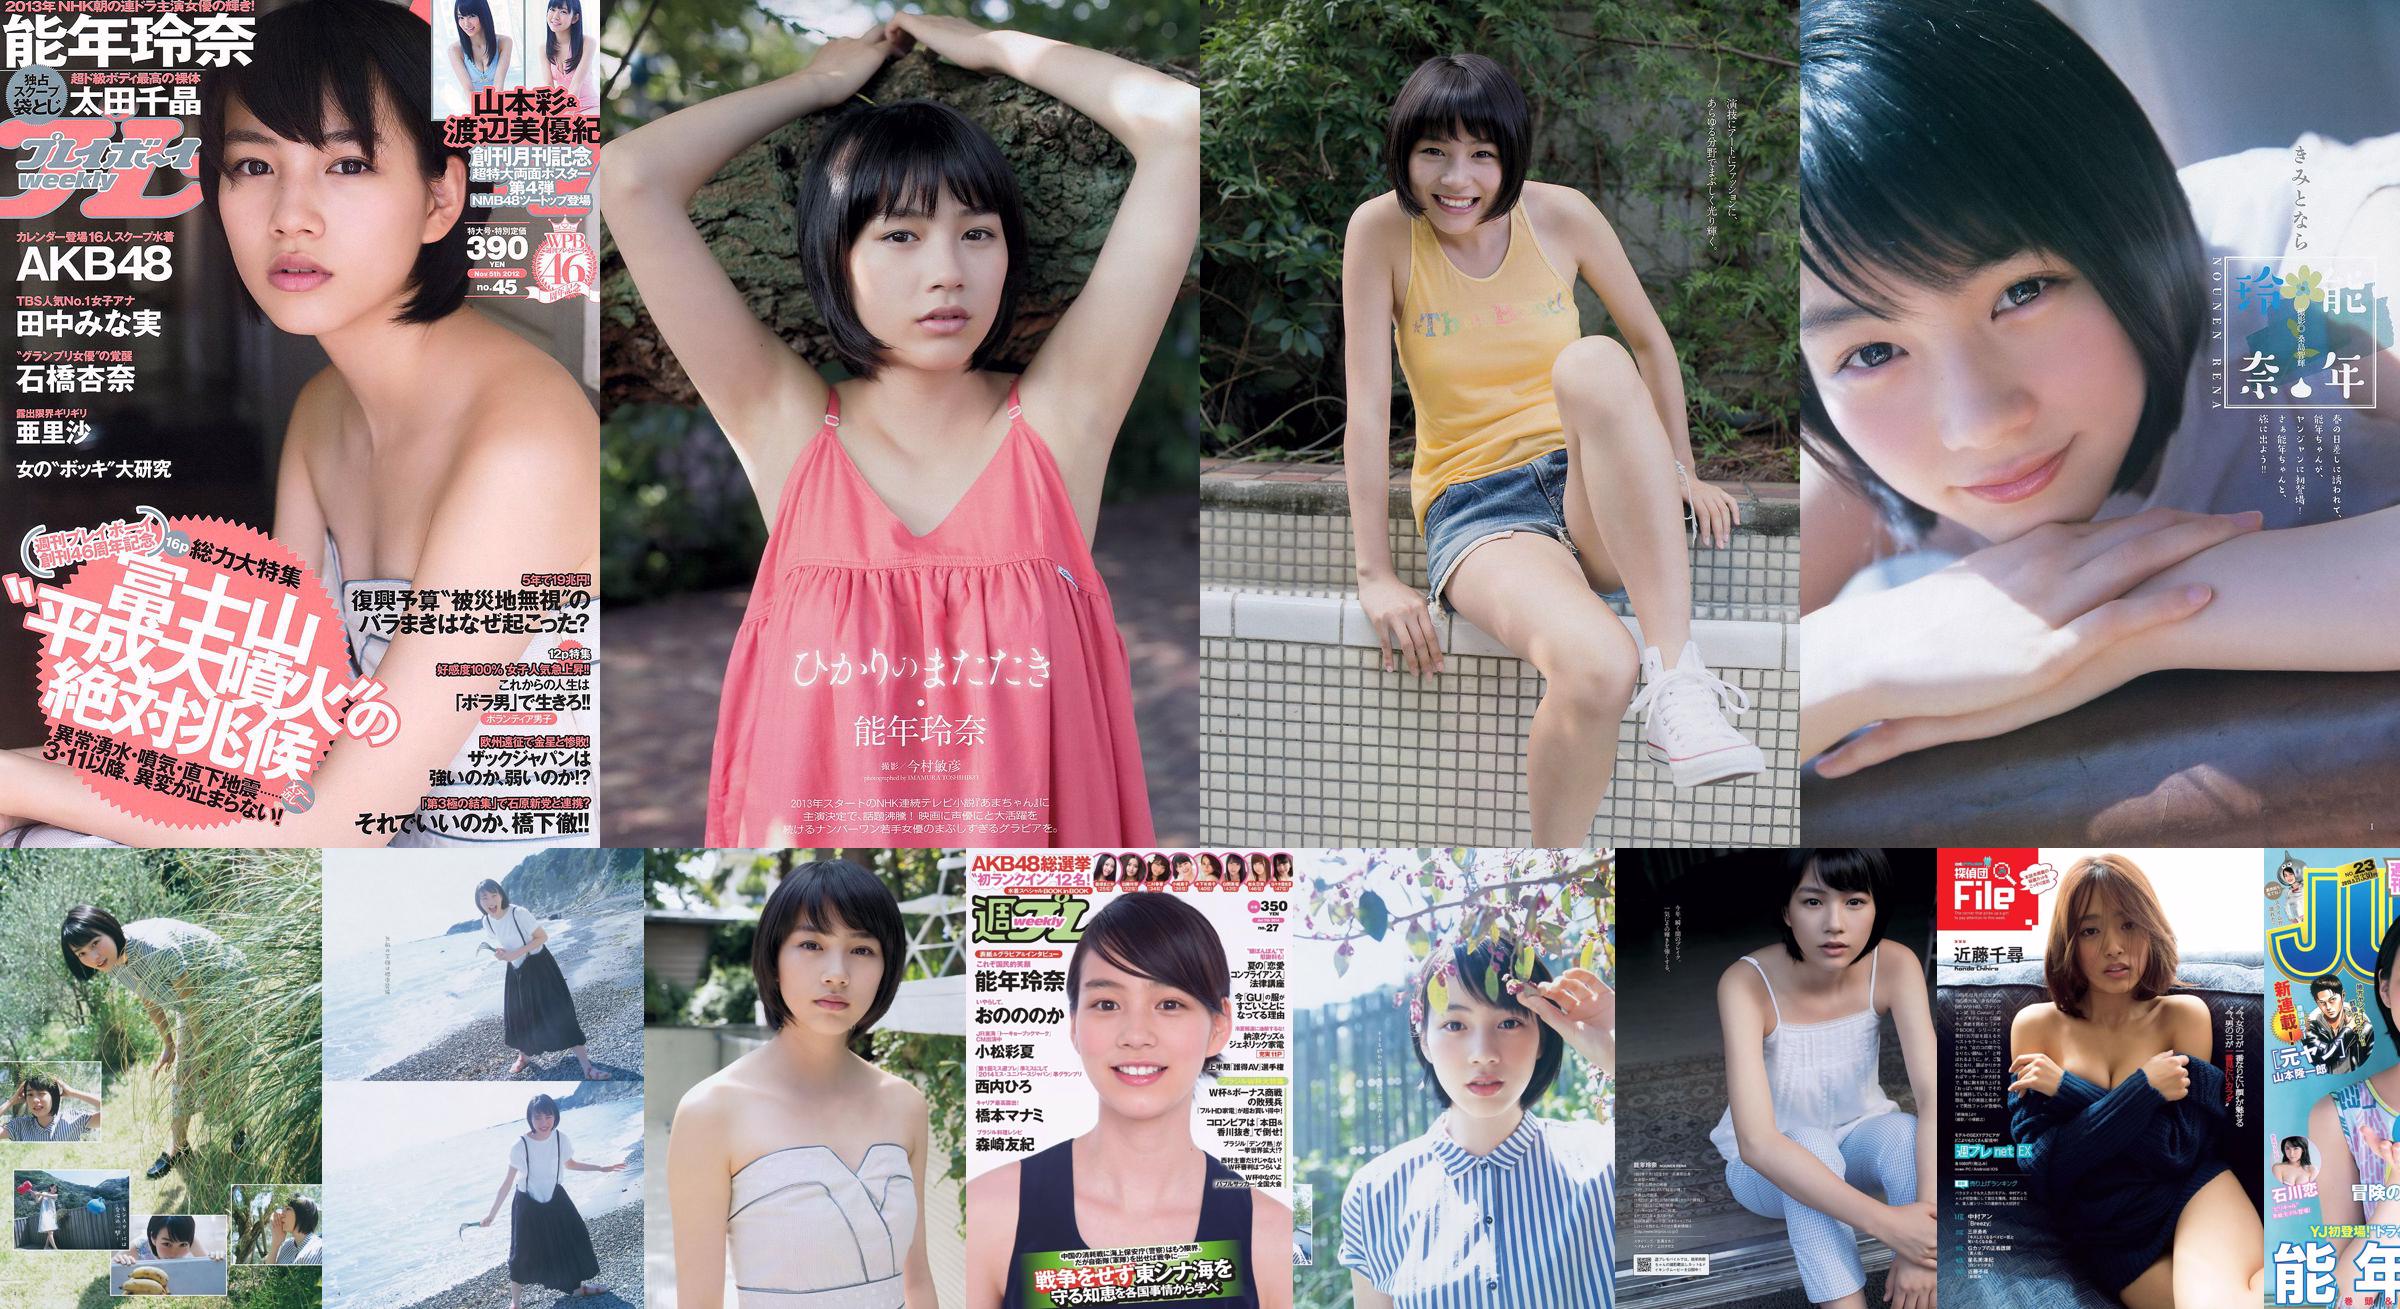 Rena Nonen Kazusa Okuyama & Haruka Fujikawa Ren Ishikawa [Weekly Young Jump] 2015 No.23 Photo Magazine No.79efe6 Page 2